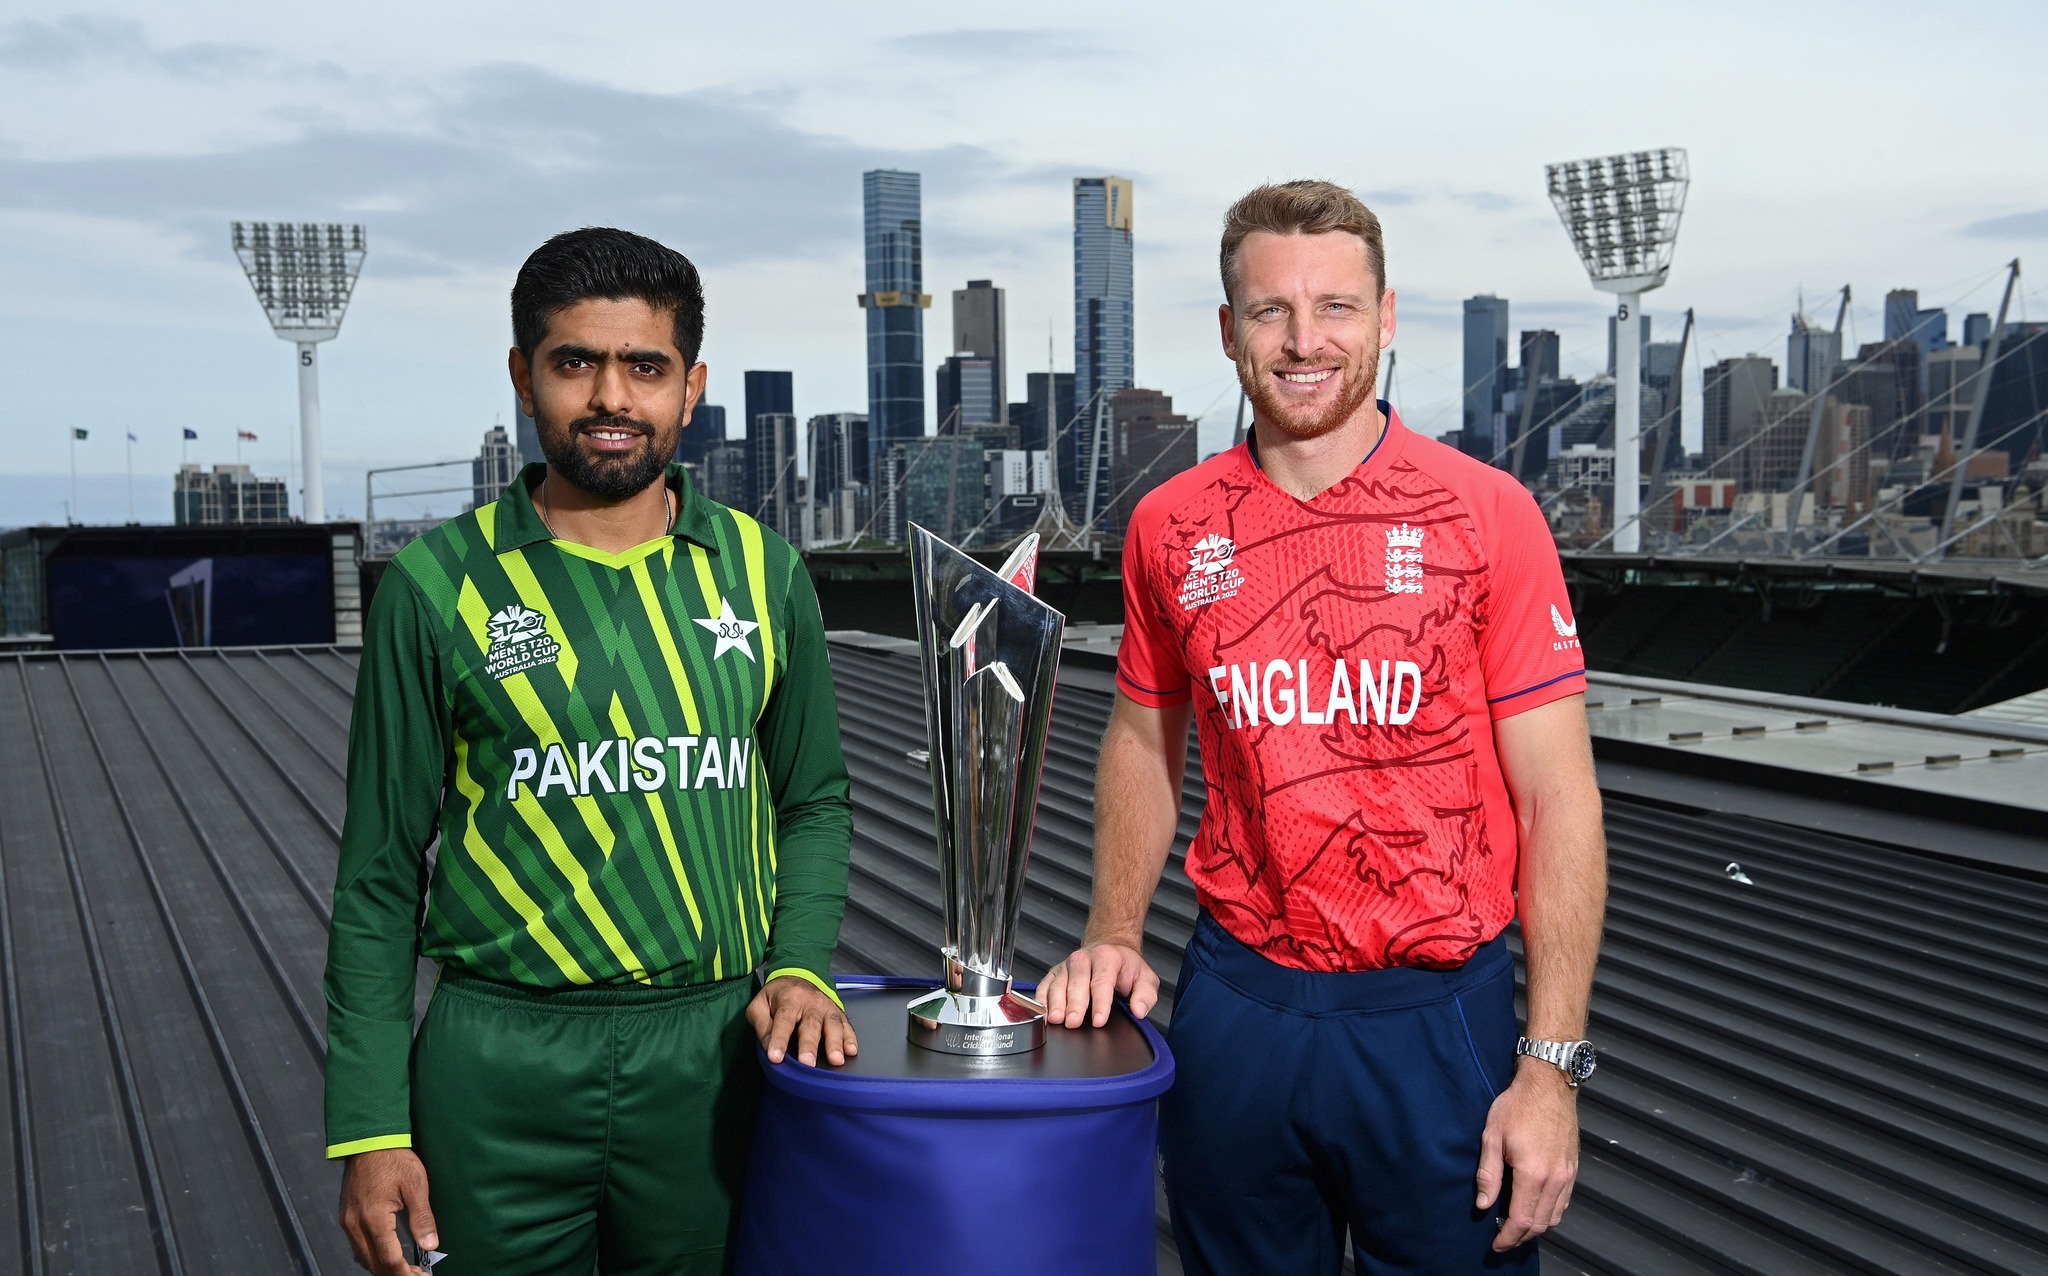 विश्वकप फाइनल : इंग्ल्यान्डले टस जित्यो, पहिले ब्याटिङ गर्दै पाकिस्तान